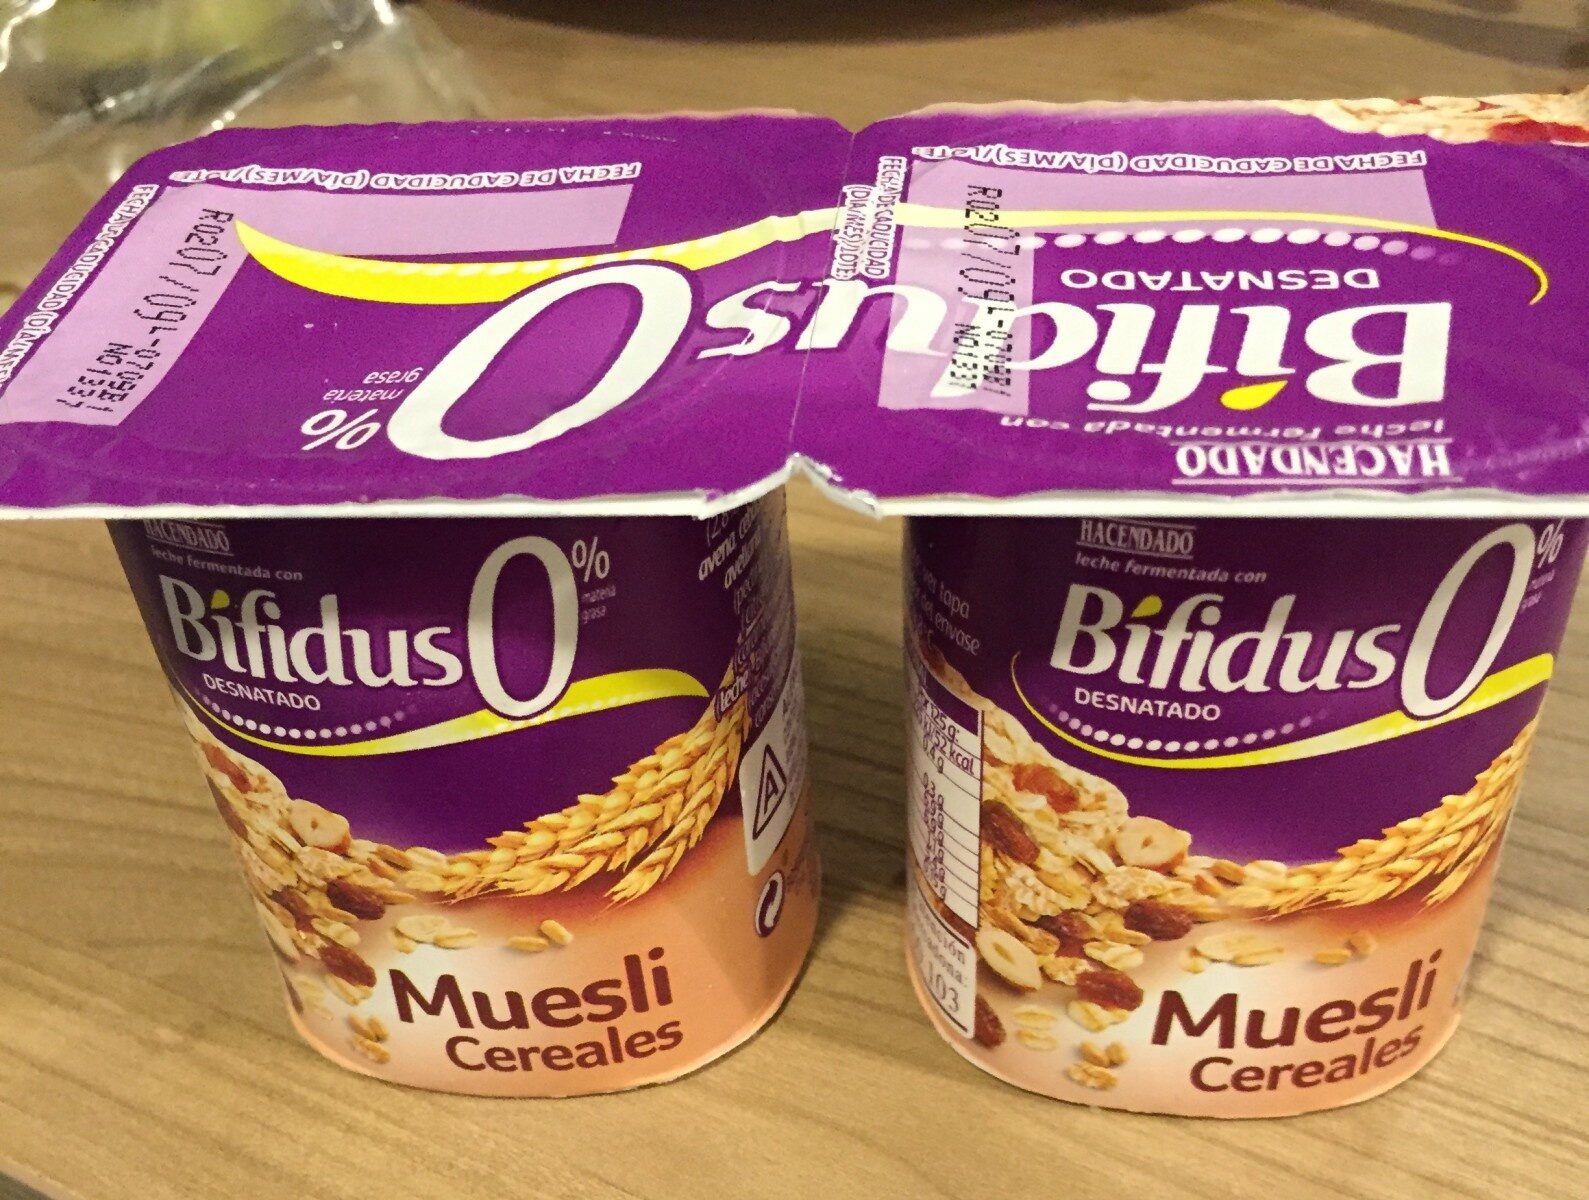 Bifidus 0% muesli cereales - Producte - es